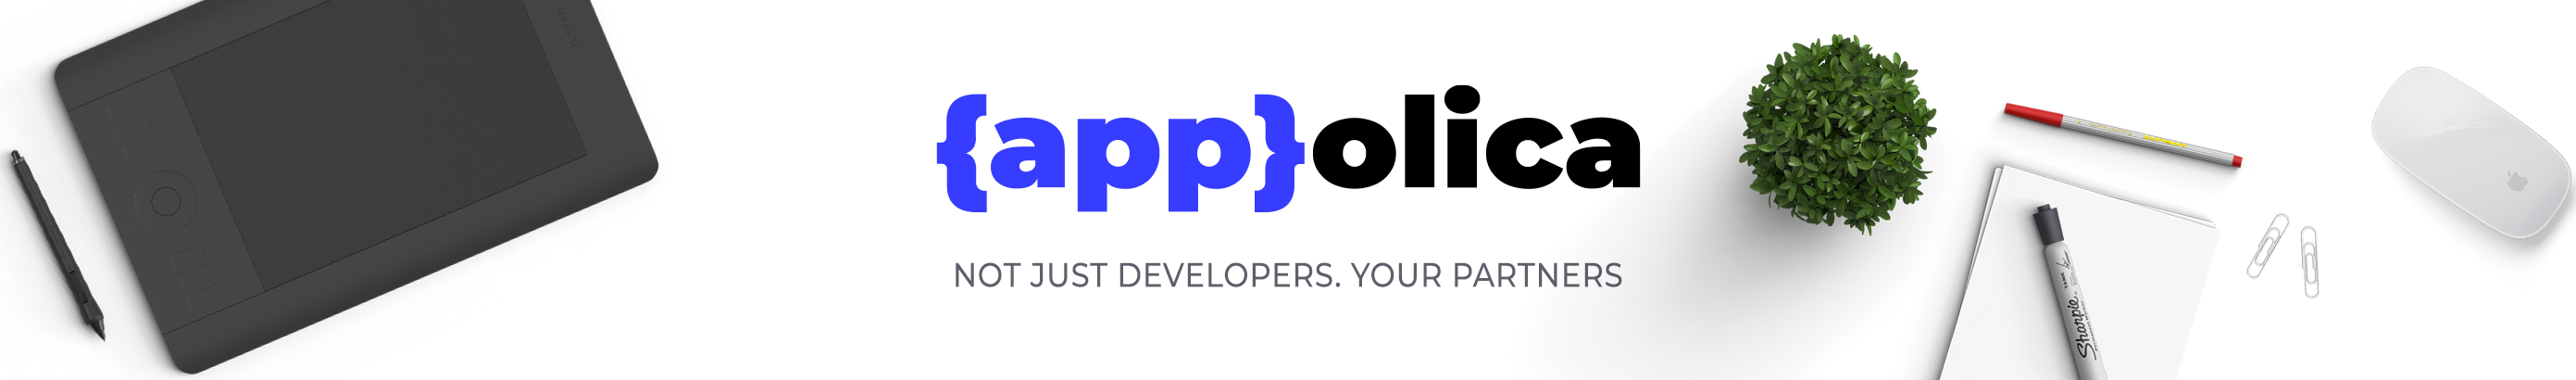 Appolica Ltd's profile banner